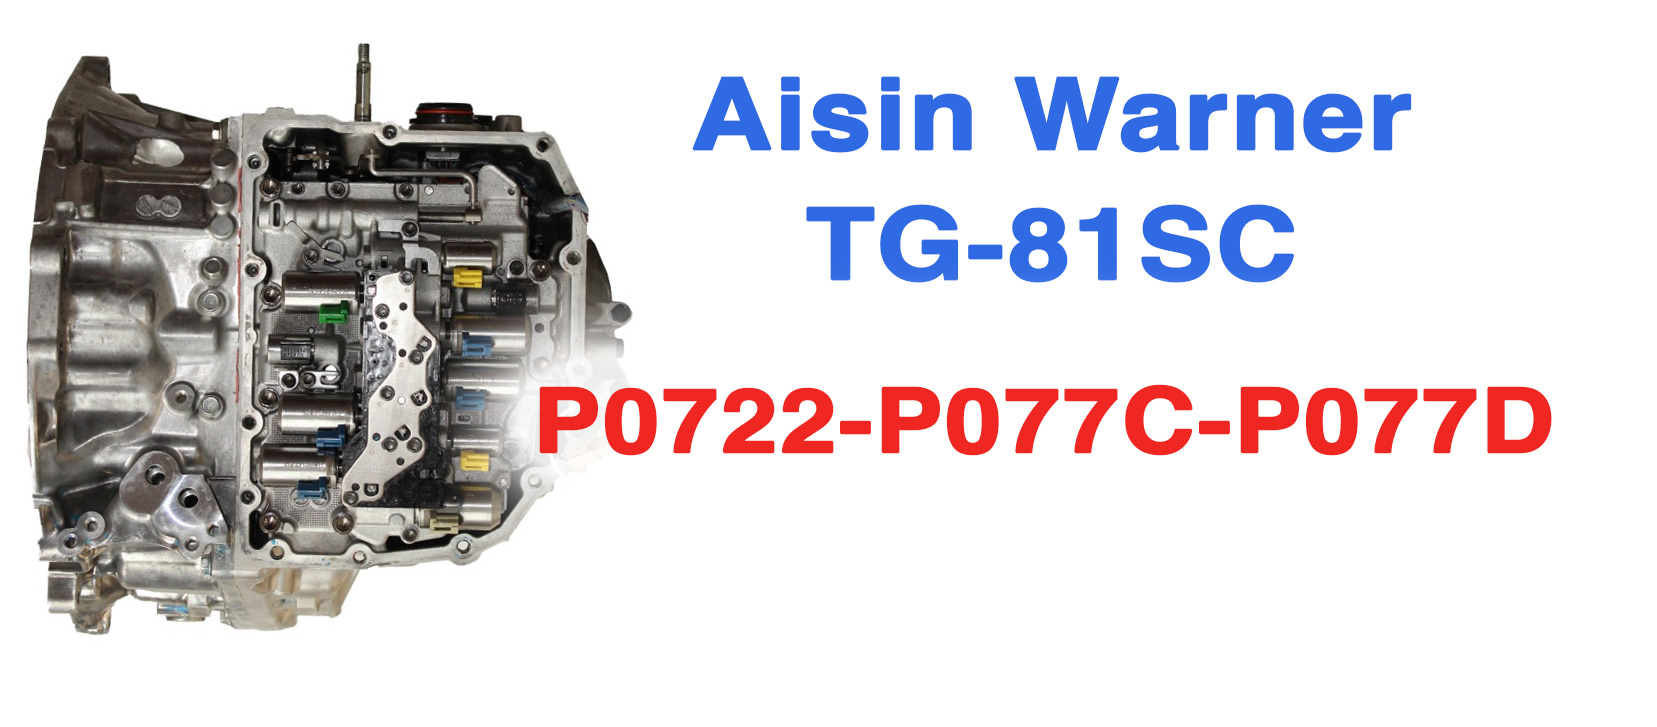 Maggiori informazioni su "Problemi di funzionamento cambio automatico Aisin Warner ad otto rapporti TG-81SC"